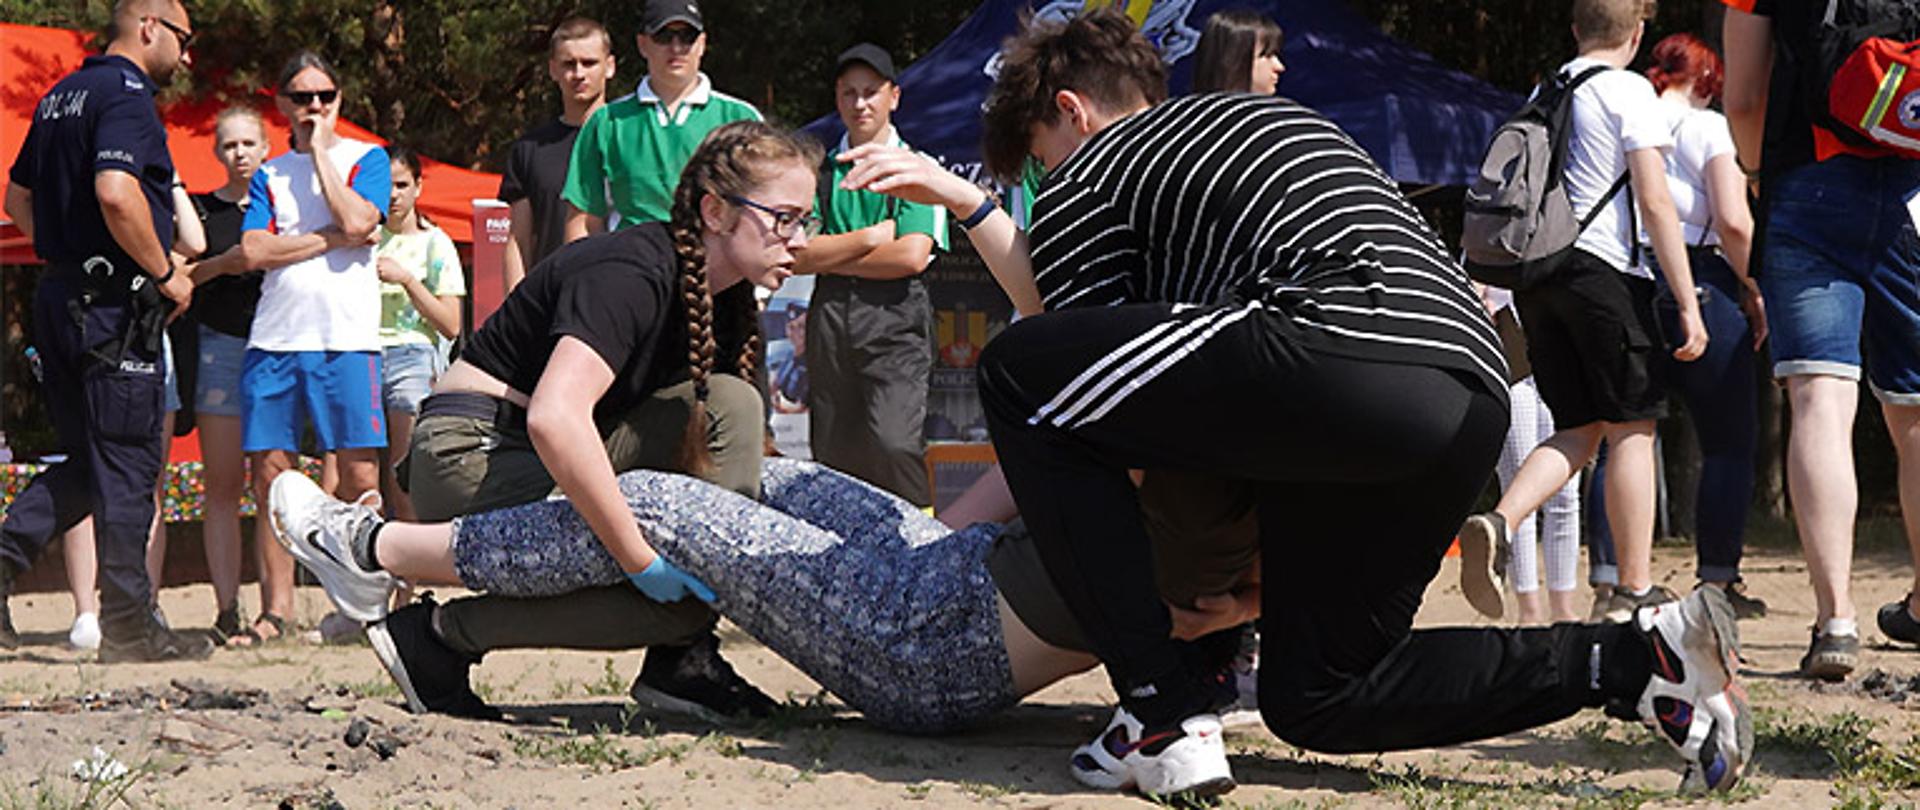 Zdjęcie przedstawia młoda dziewczynę i młodego chłopaka udzielających pomoc osobie. Dziewczyna ma na dłoniach rękawiczki lateksowe, trzyma osobę poszkodowaną za nogi, chłopak trzyma poszkodowanego za tułów od strony głowy. W tle osoby przyglądające się akcji ratunkowej.